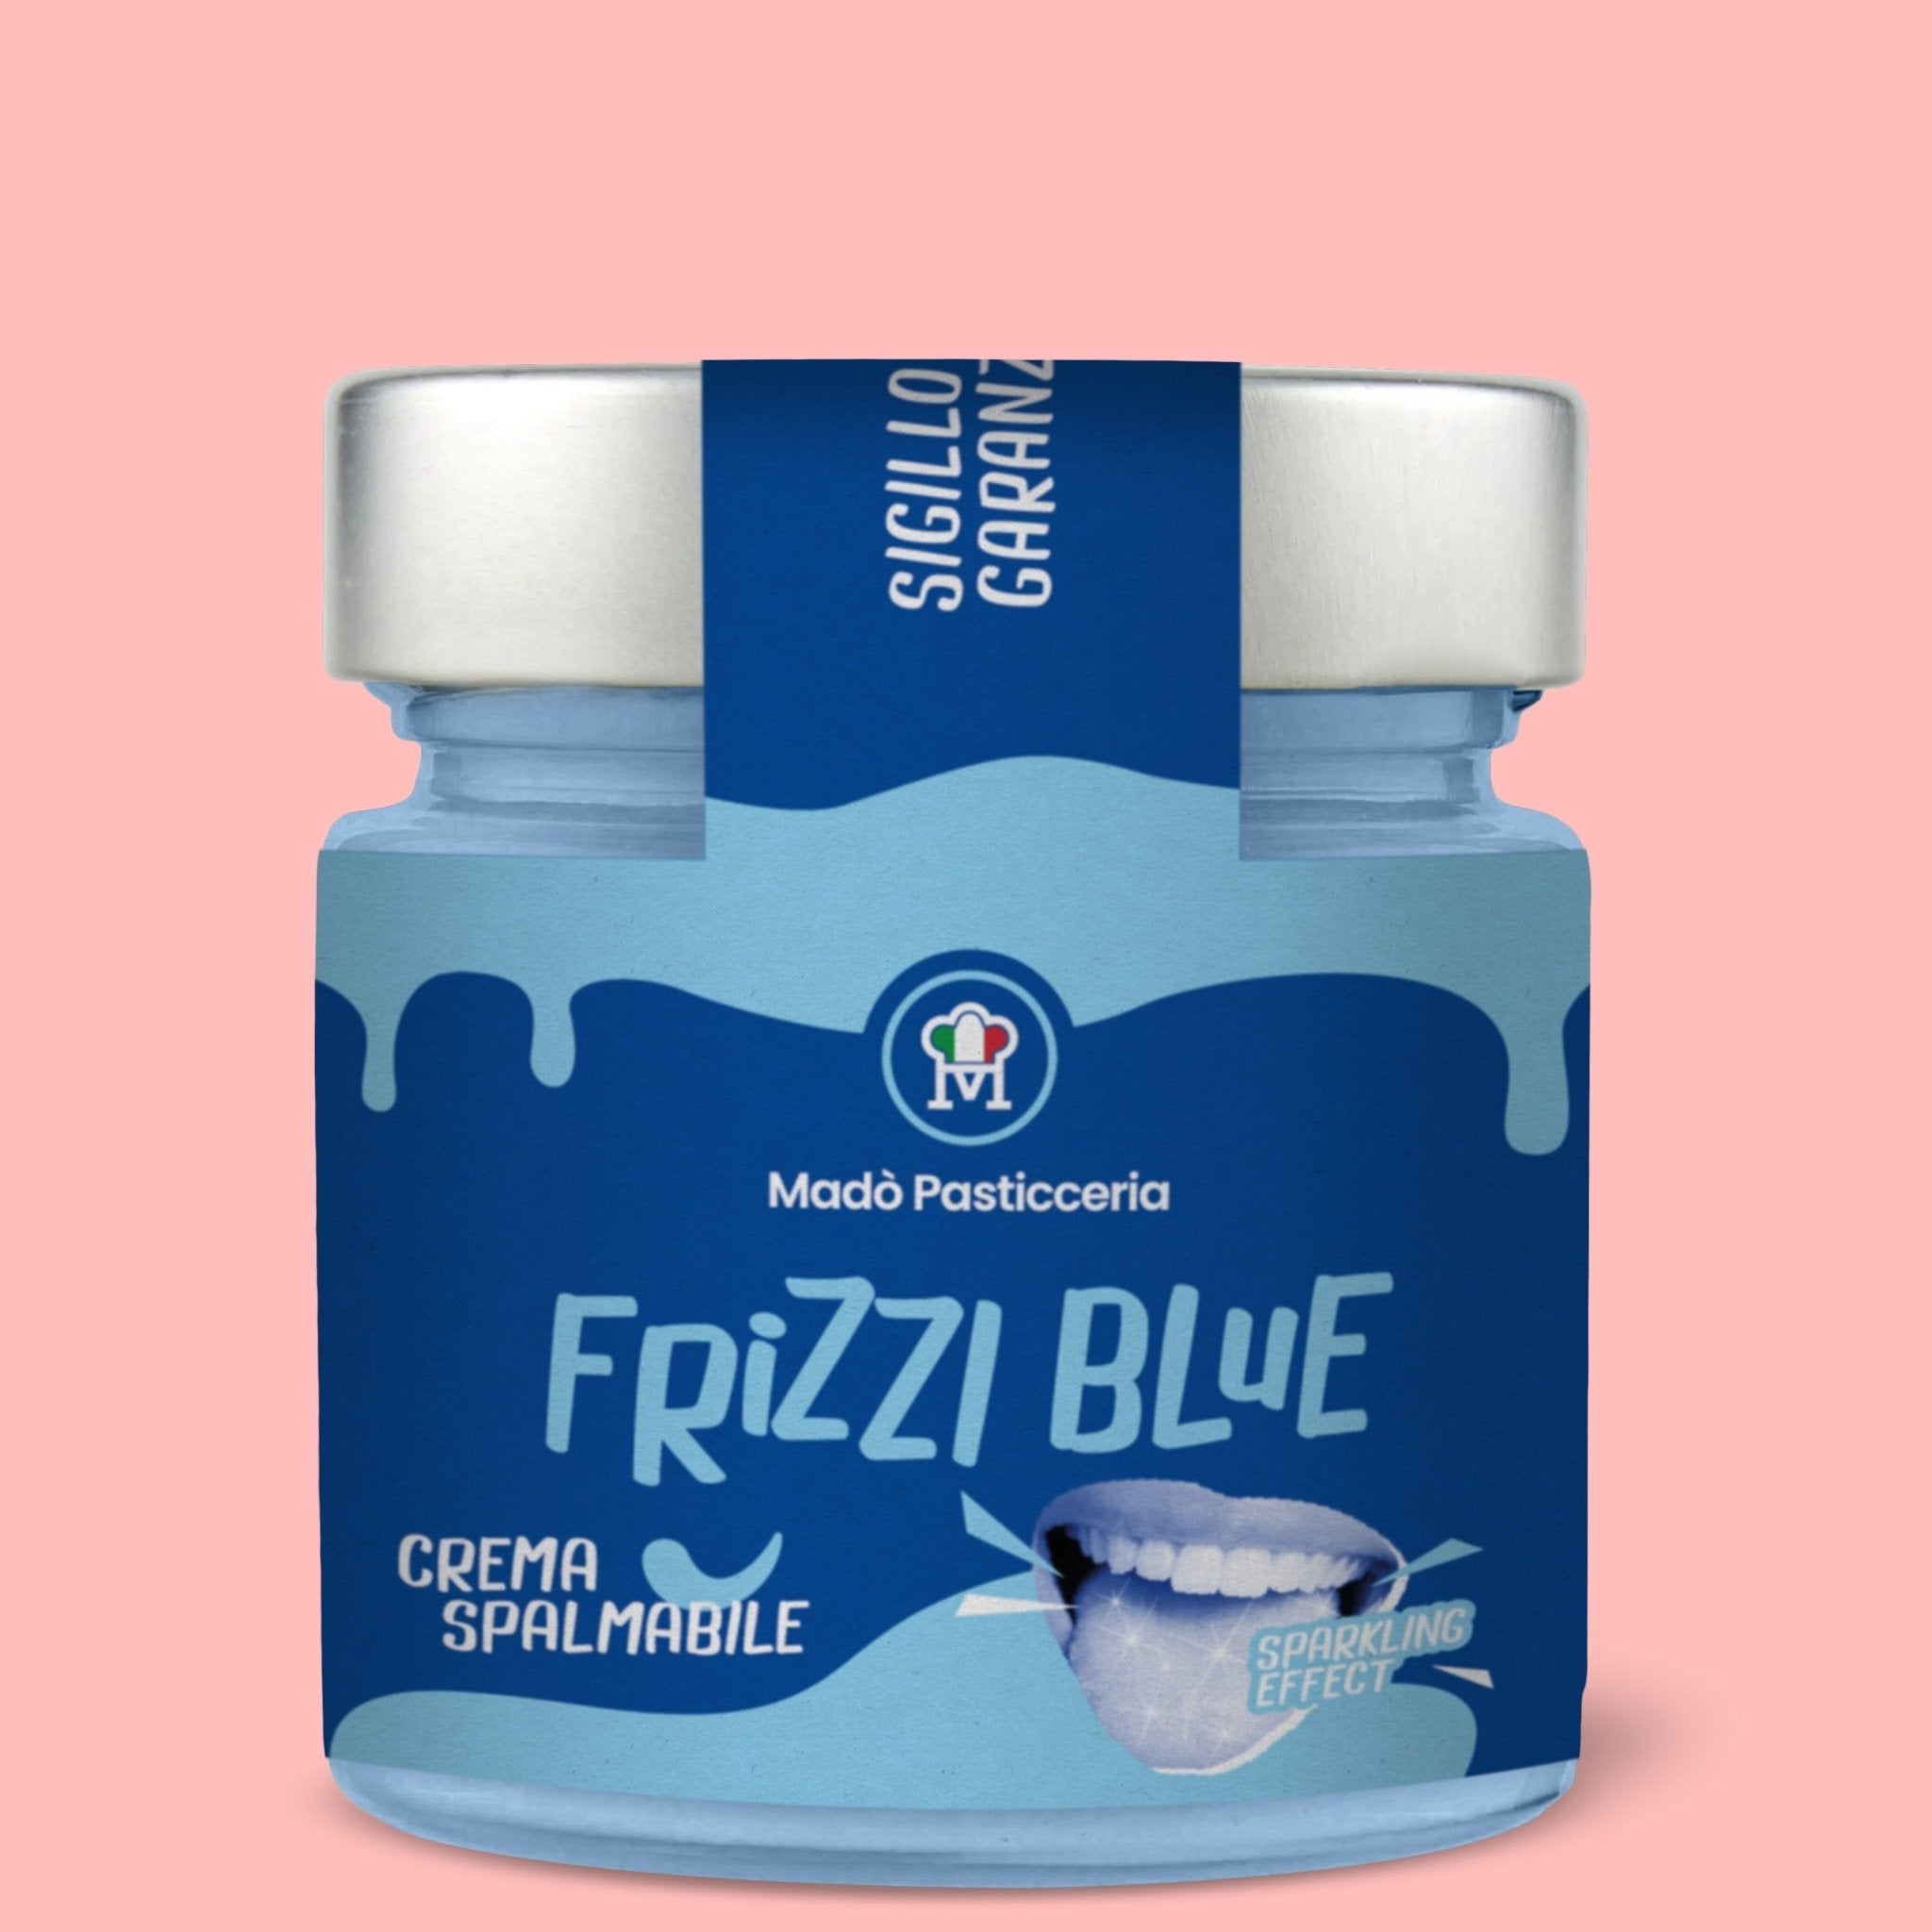 Crema spalmabile "Frizzi Blue" - Madò Pasticceria